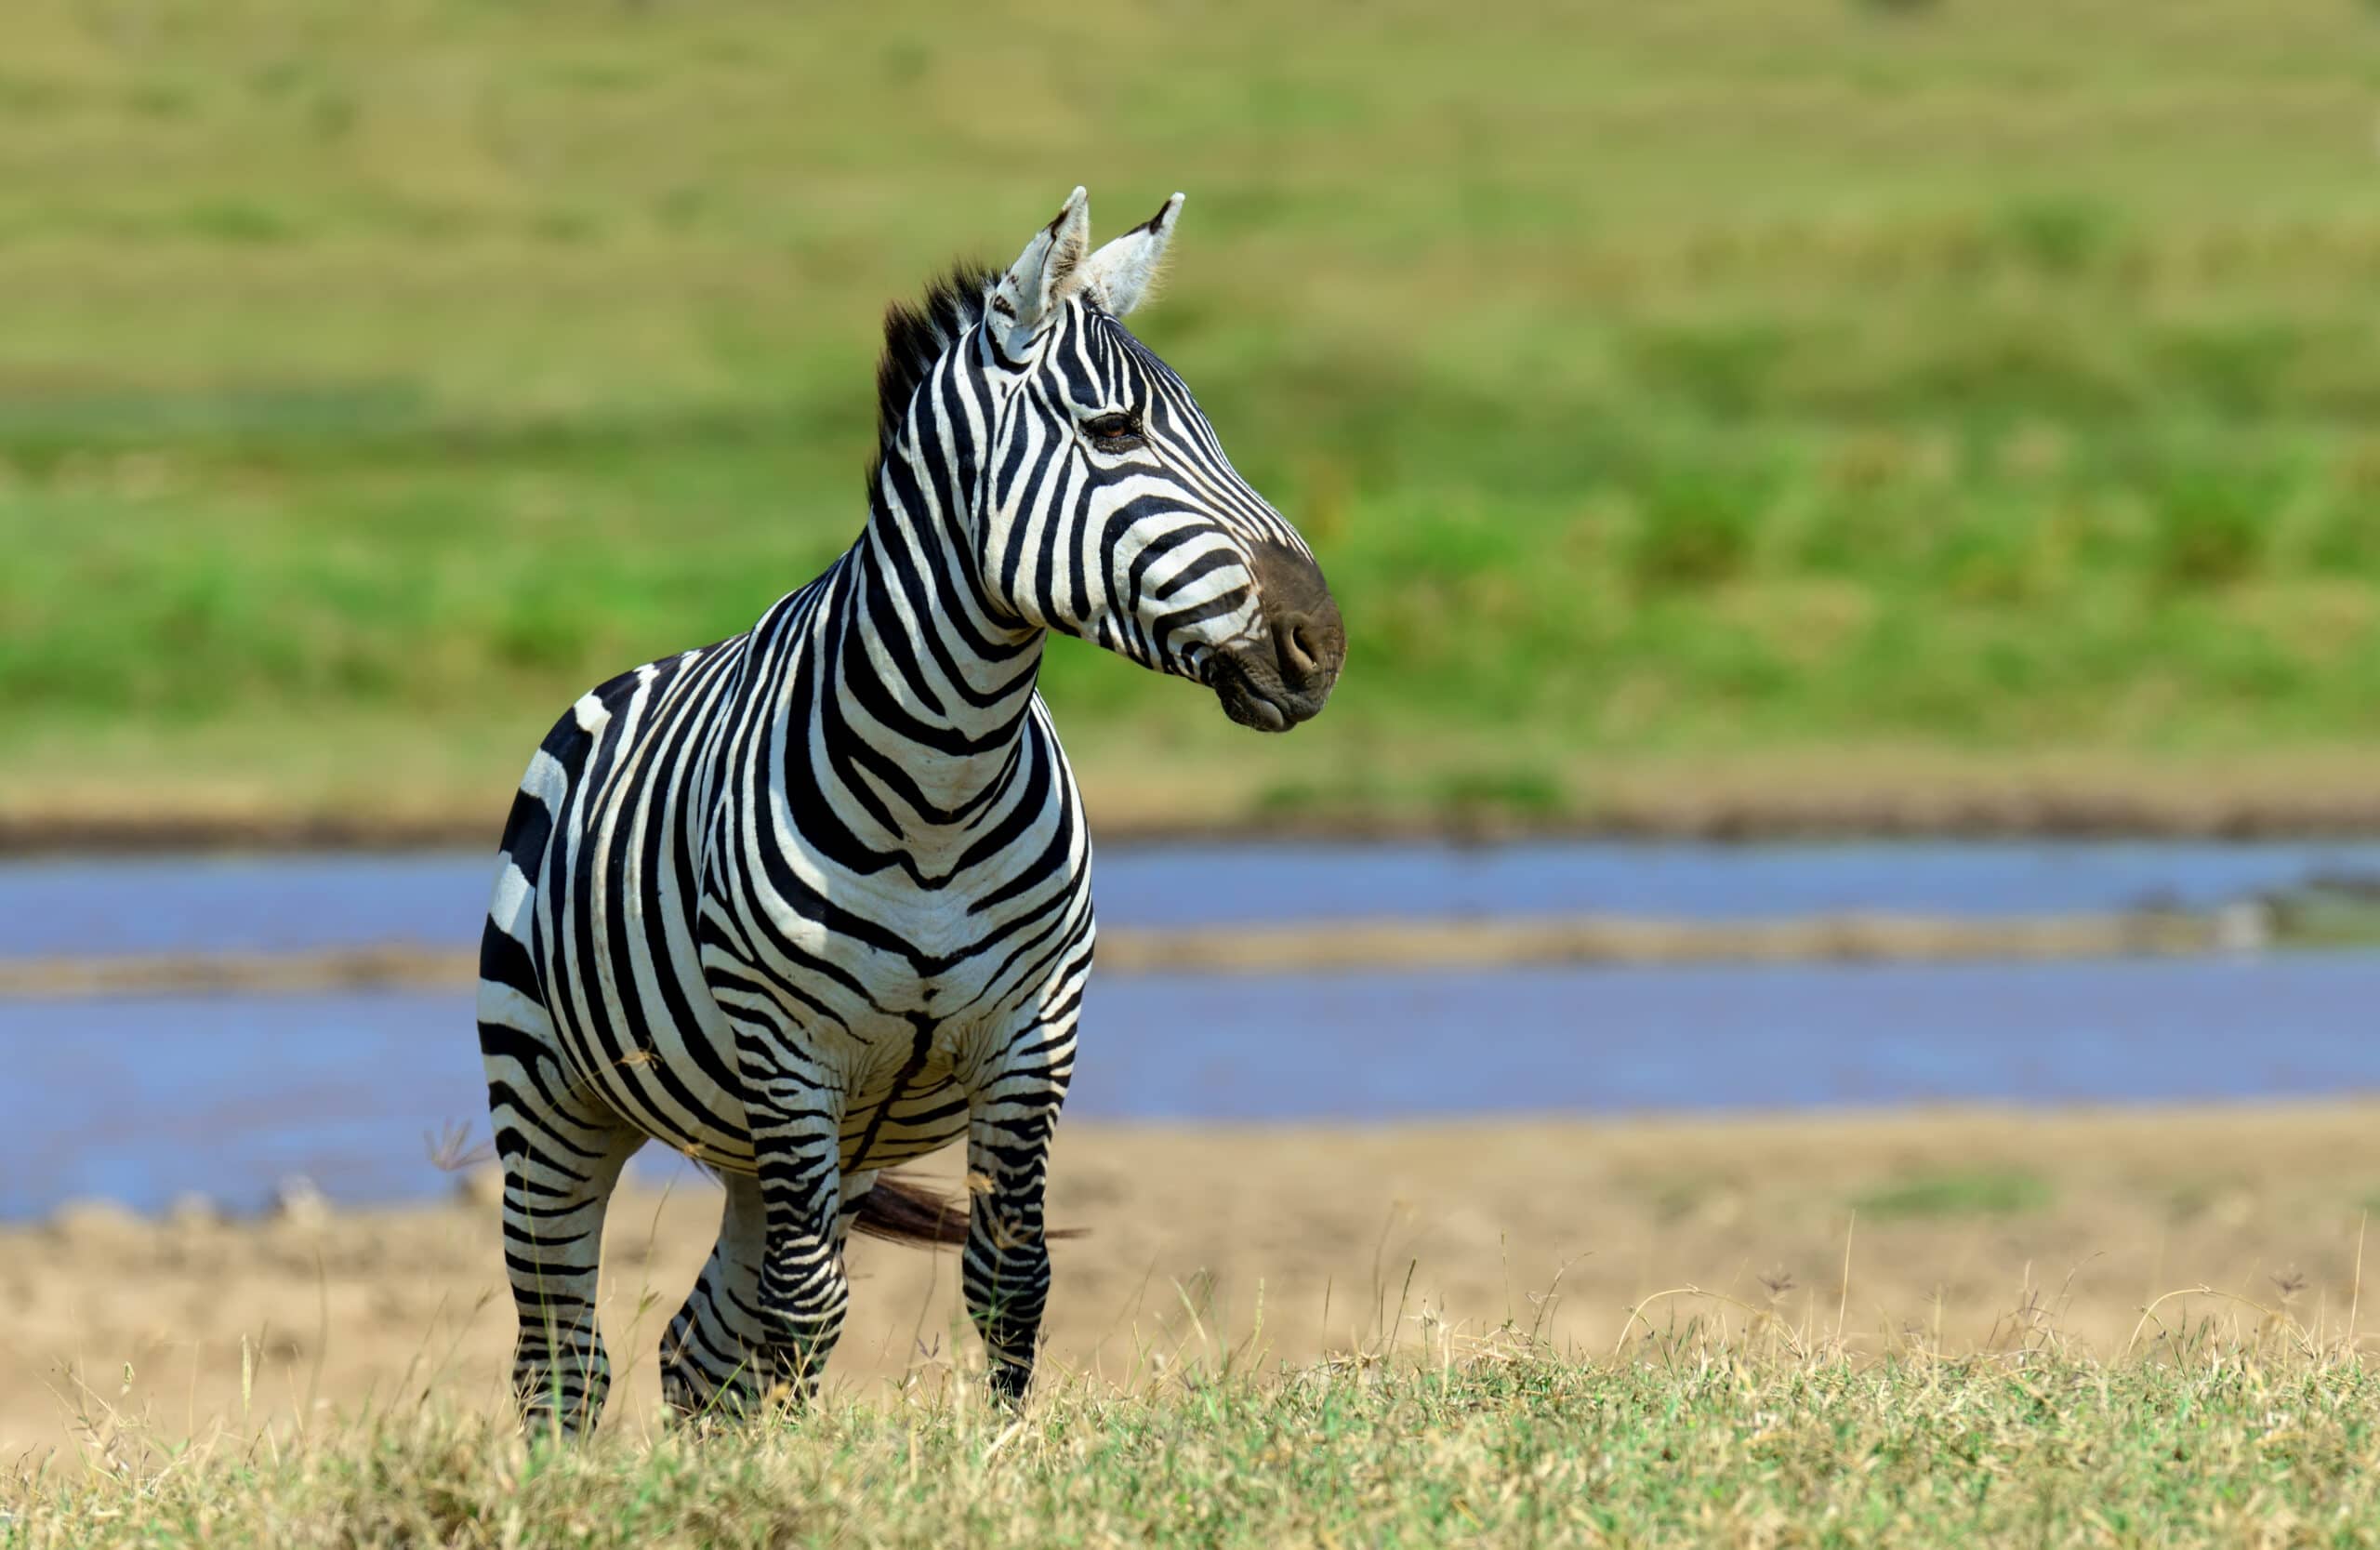 zebra in national park of kenya 2021 08 26 15 55 36 utc scaled